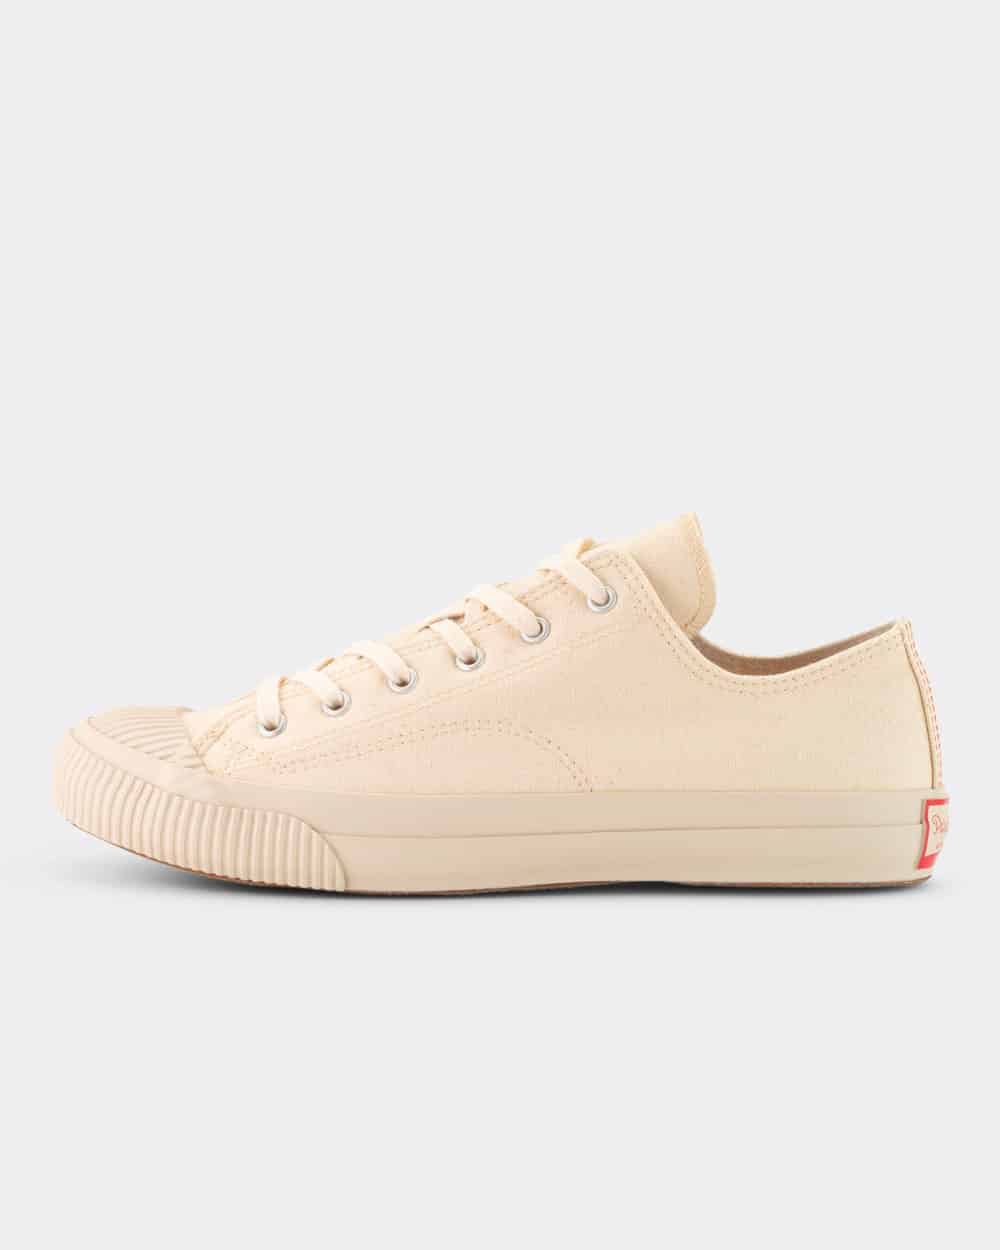 PRAS Shellcap Low Sneakers - Kinari/Off White · Those That Know